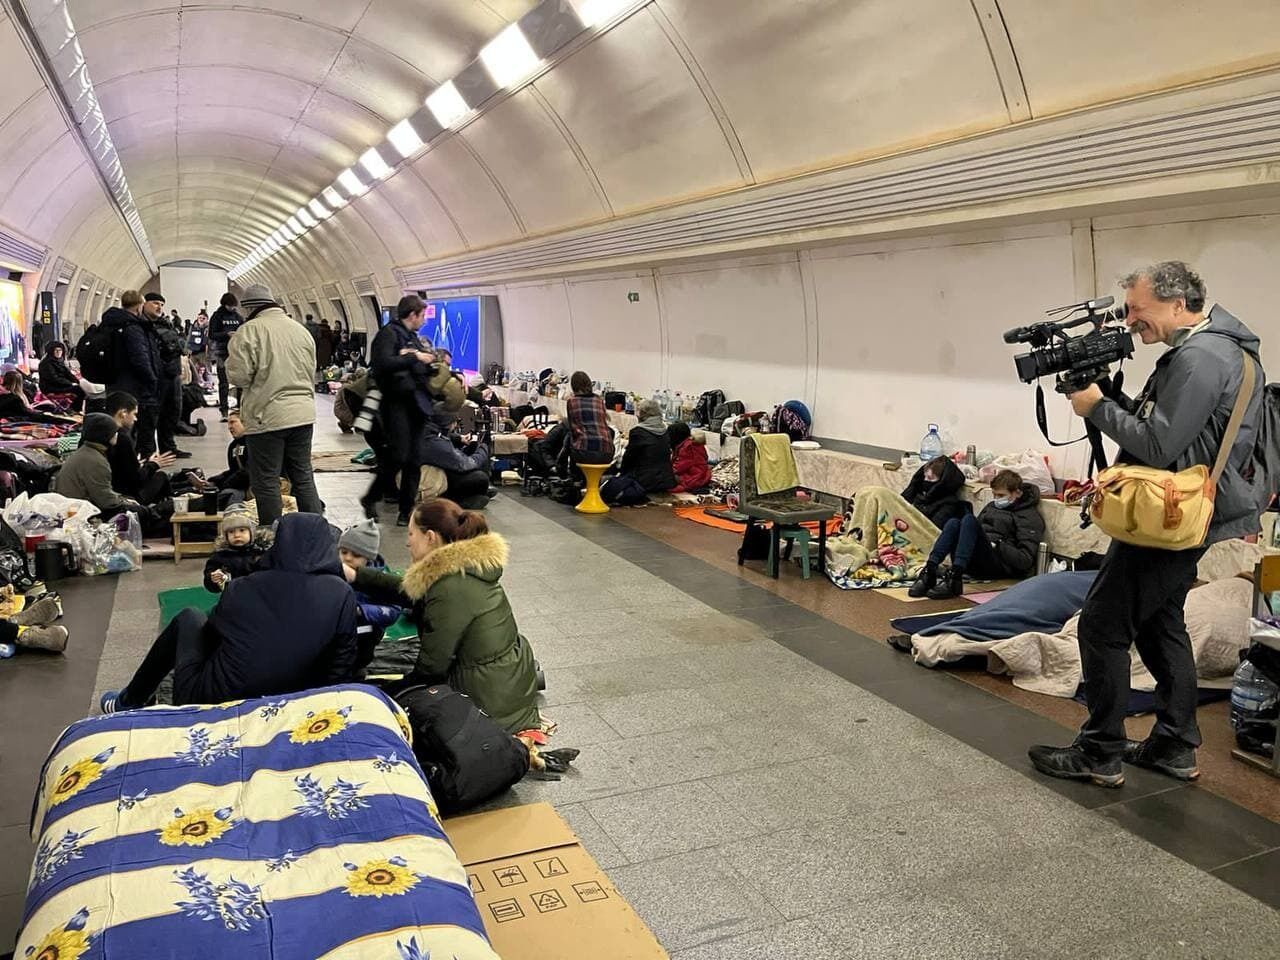 Иностранные журналисты увидели в каких условиях живут киевляне в метрополитене. Фото и видео